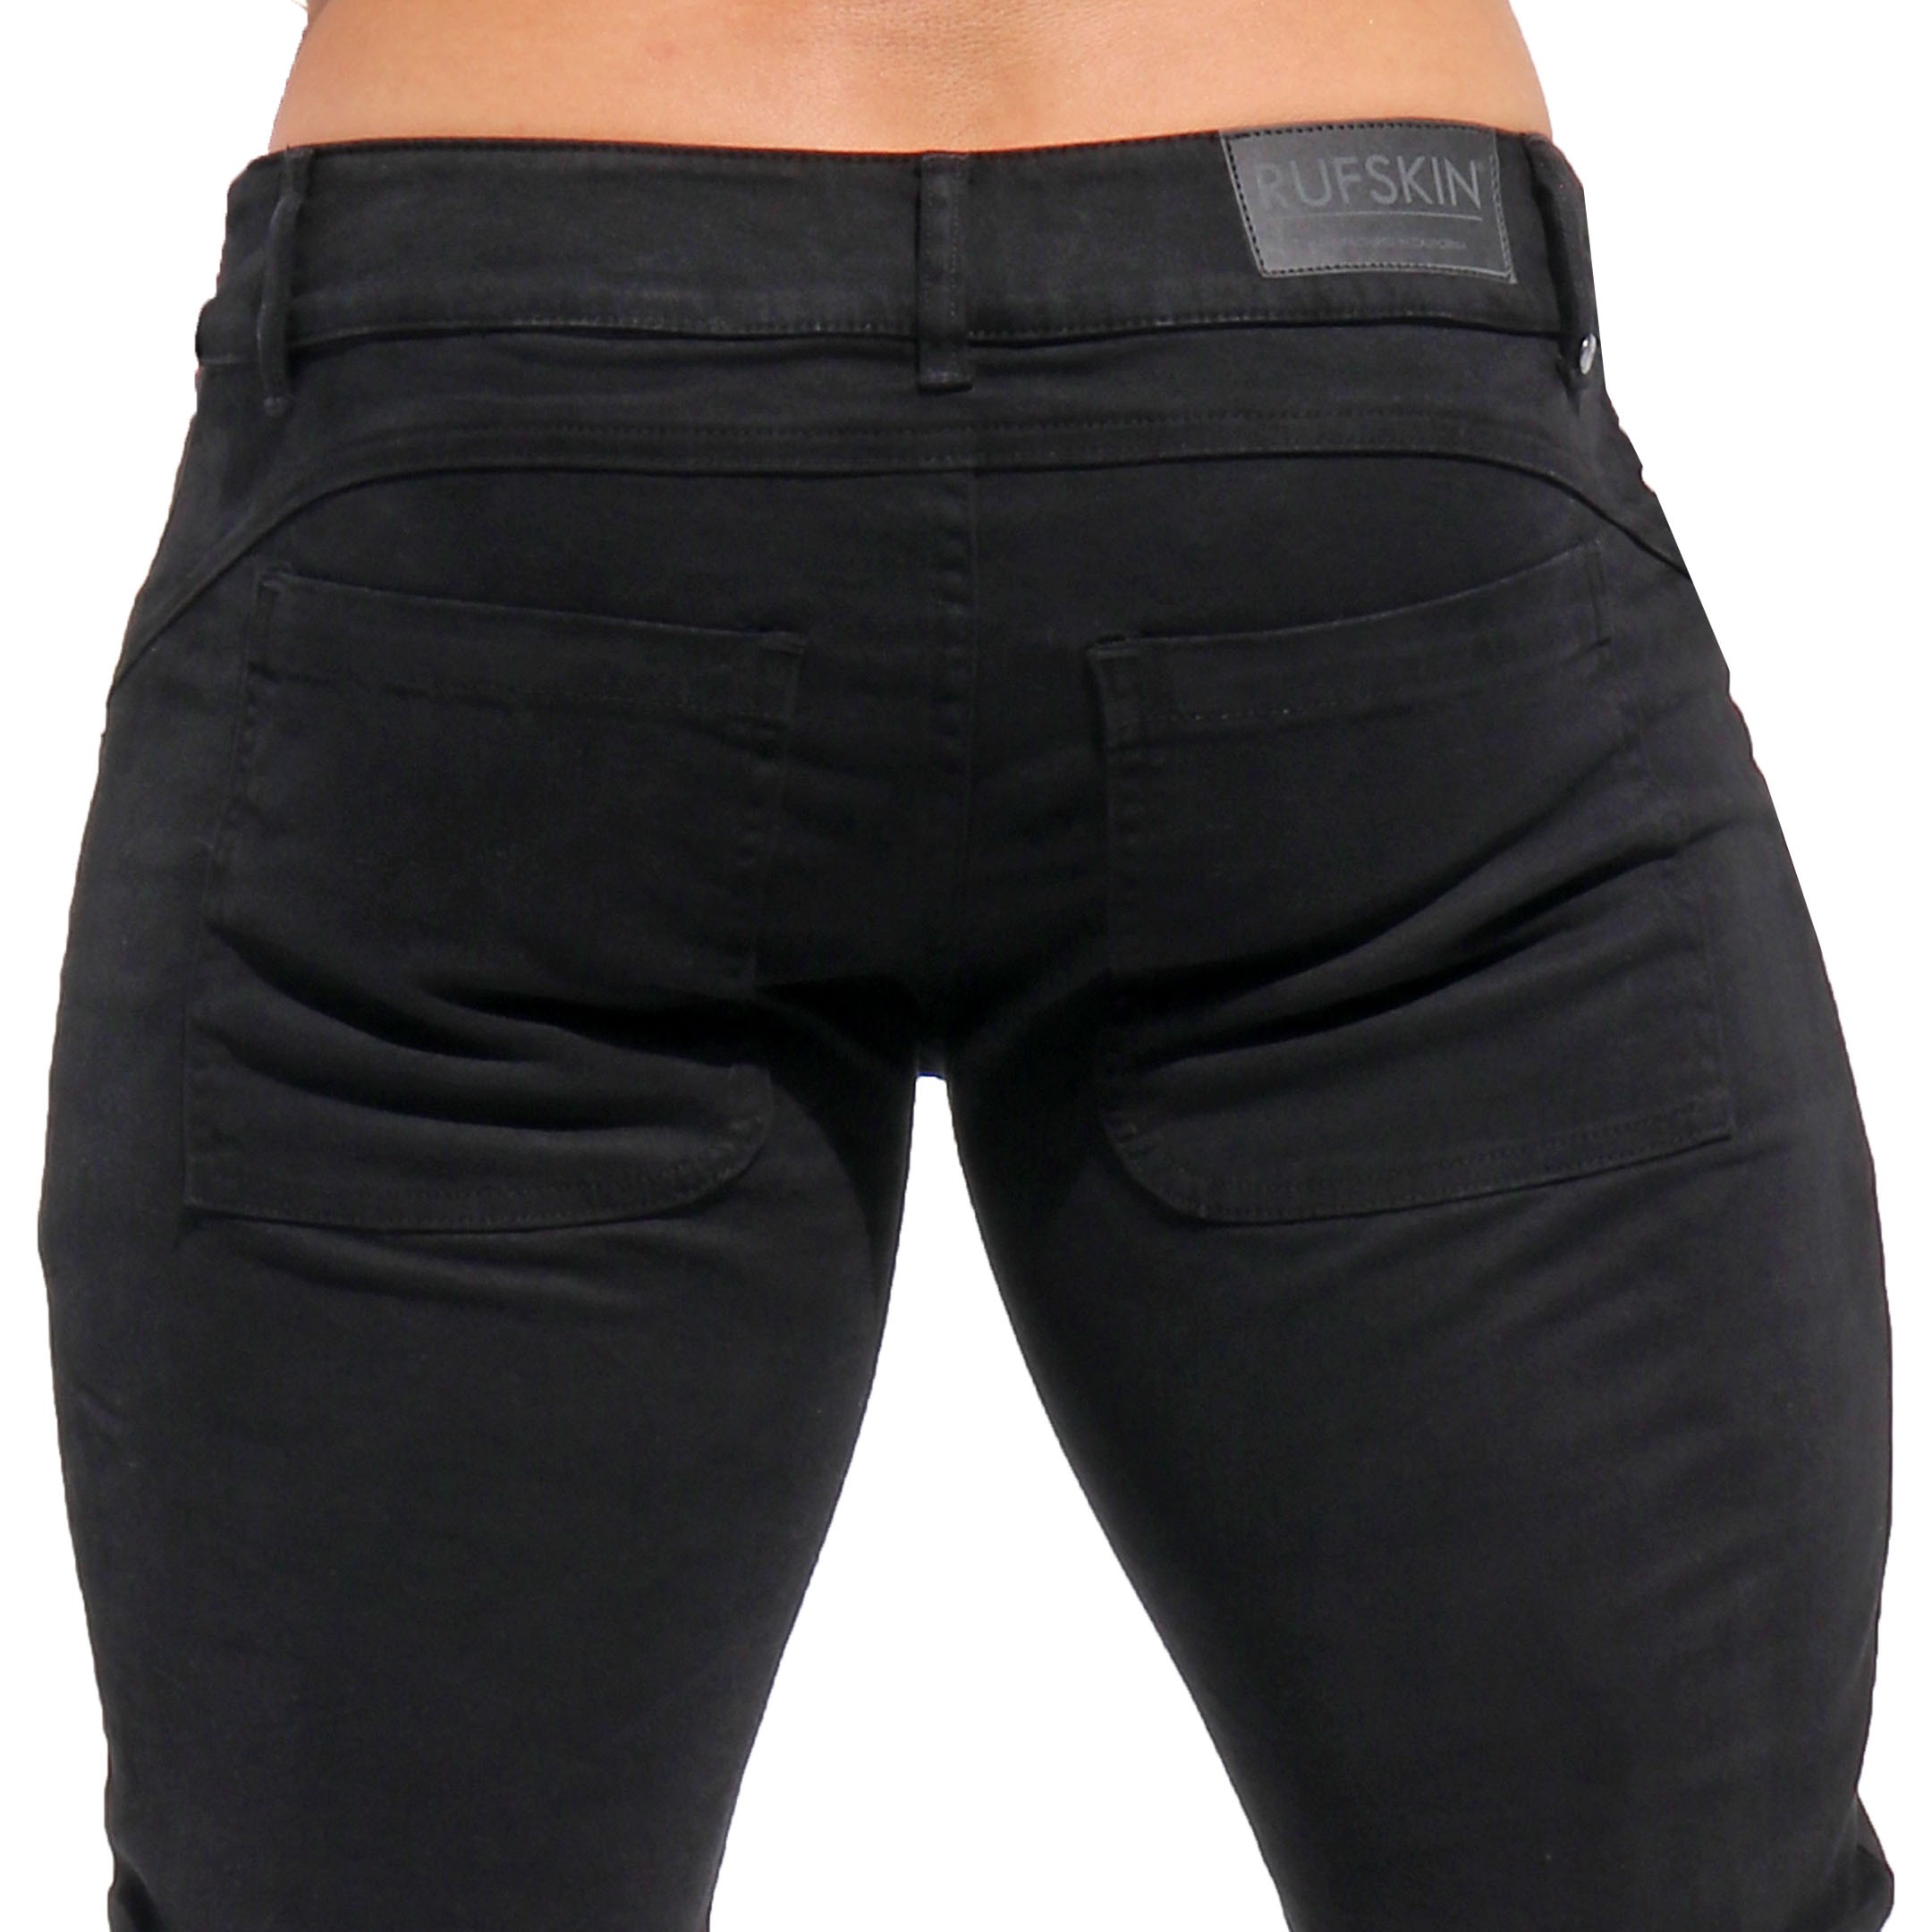 Rufskin Chinos Jeans Pants - Black | INDERWEAR